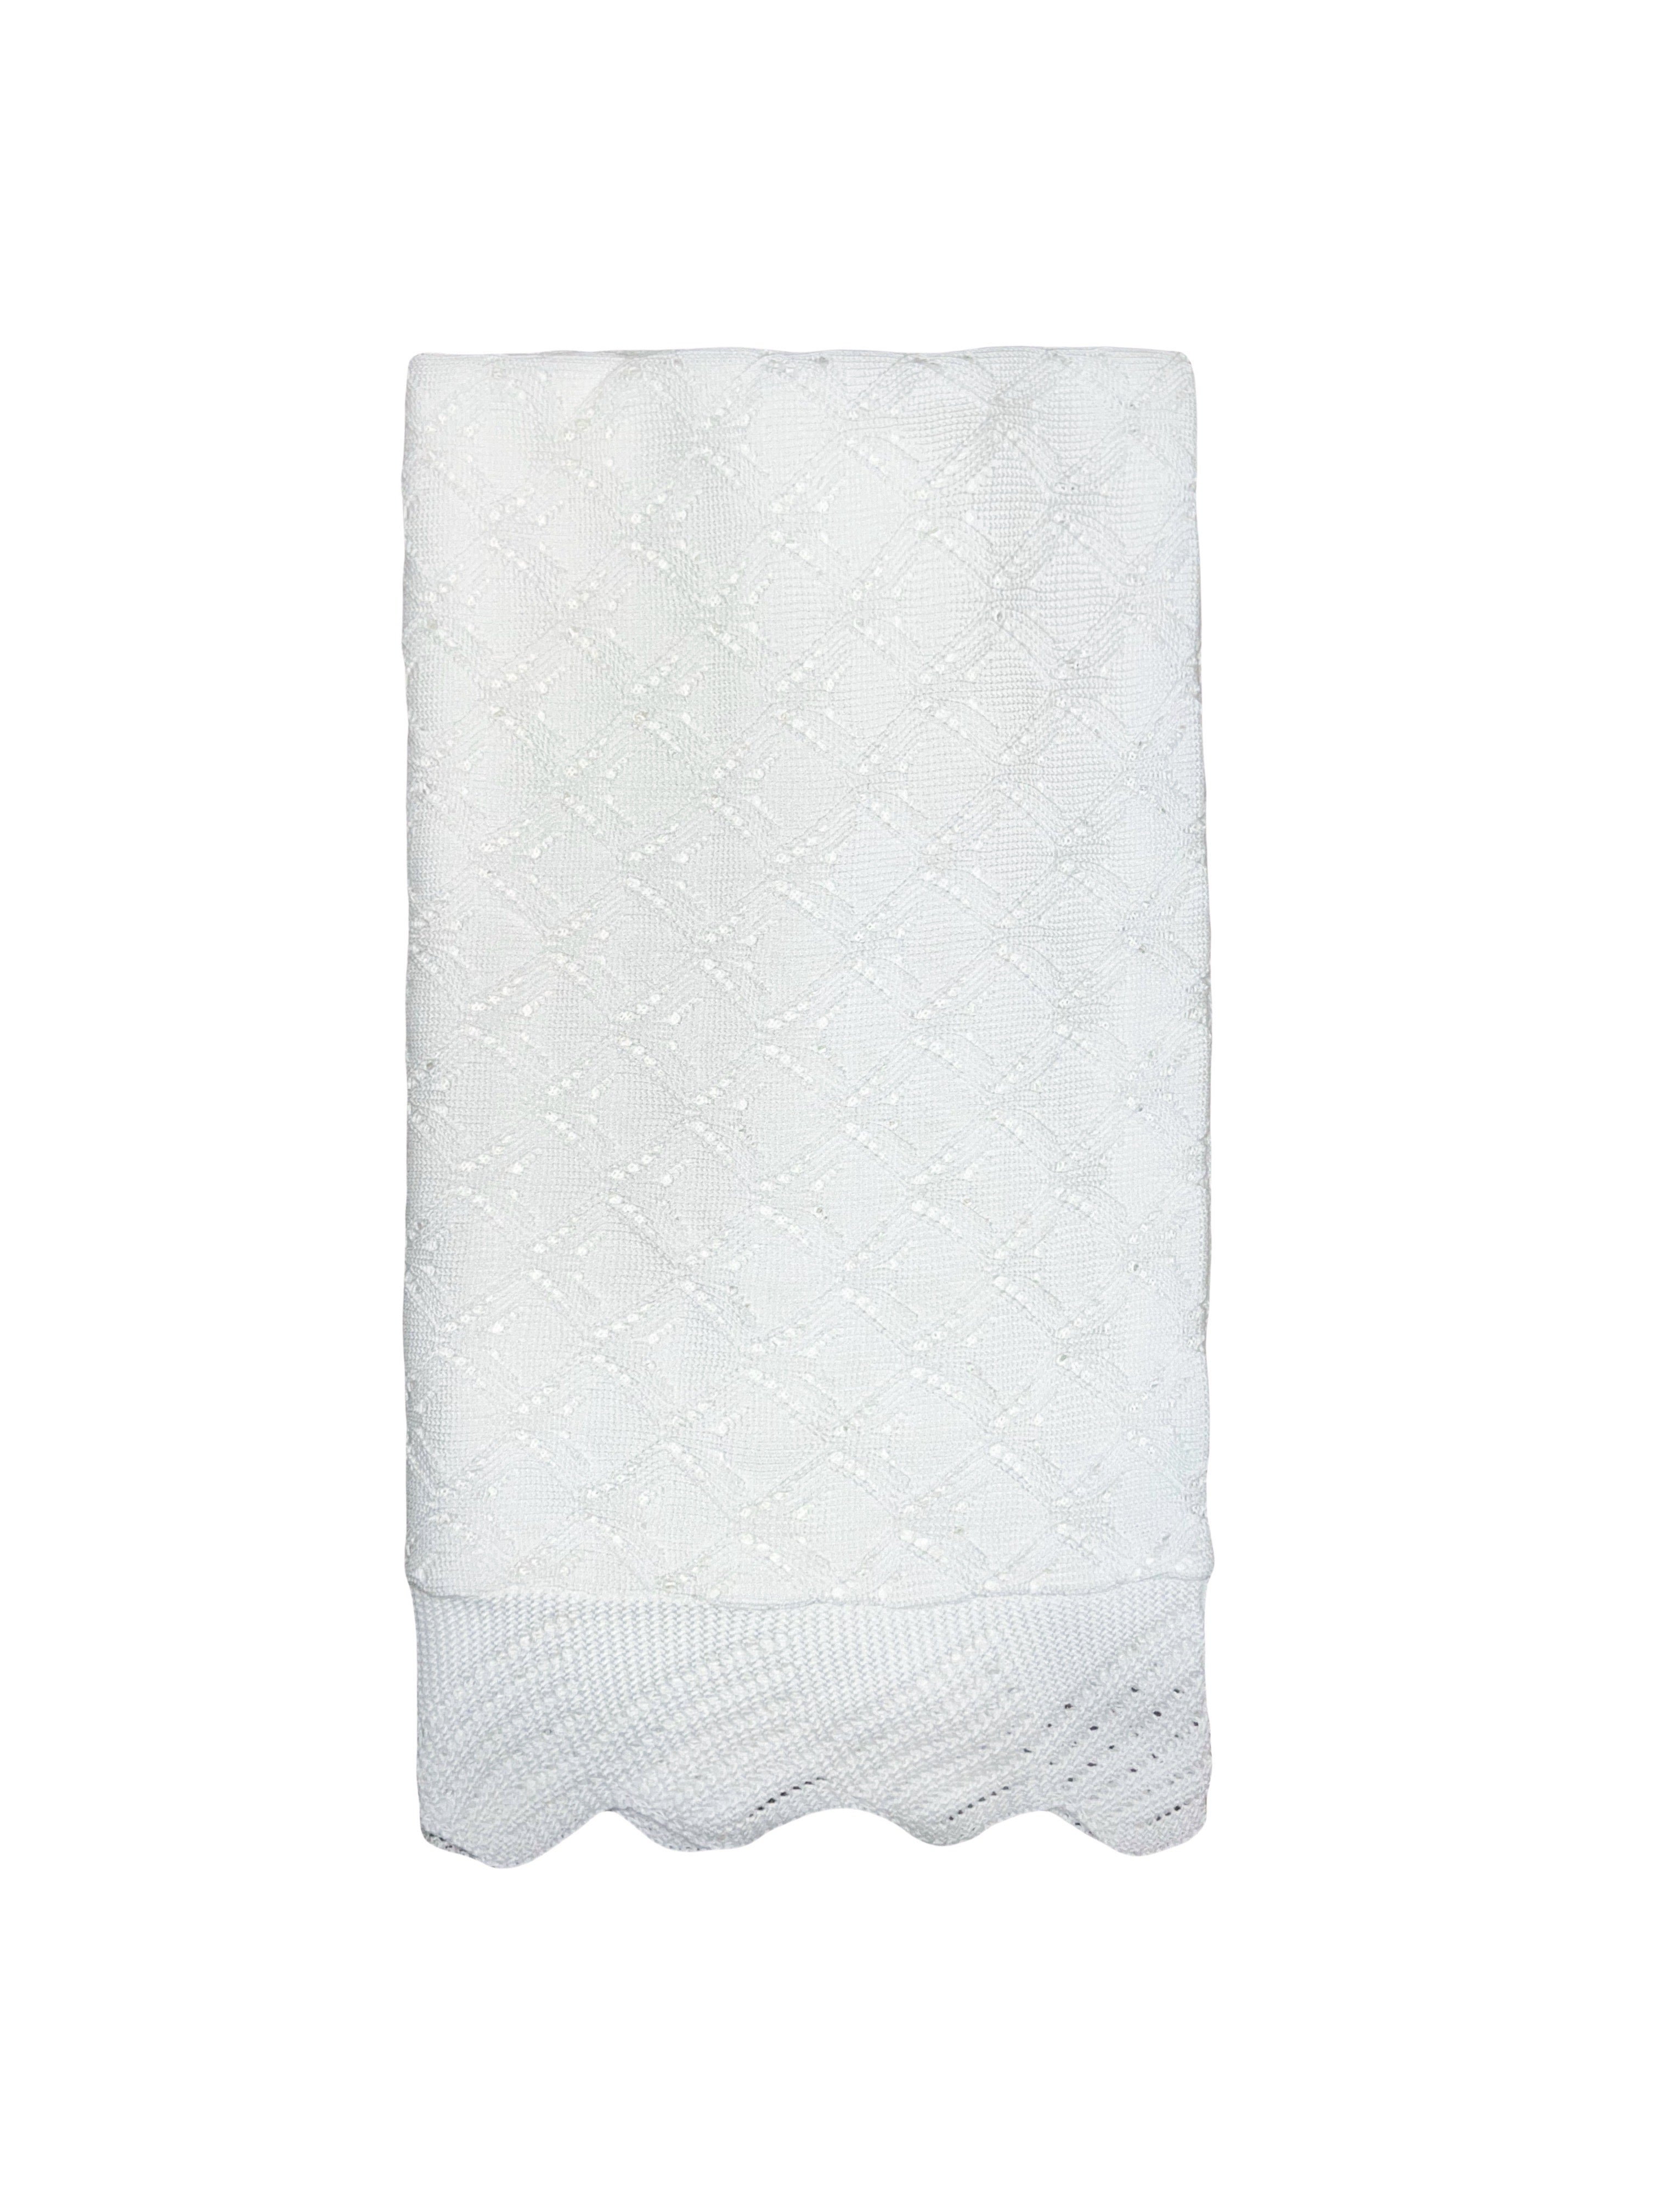 White Knit Soft Baby Blanket